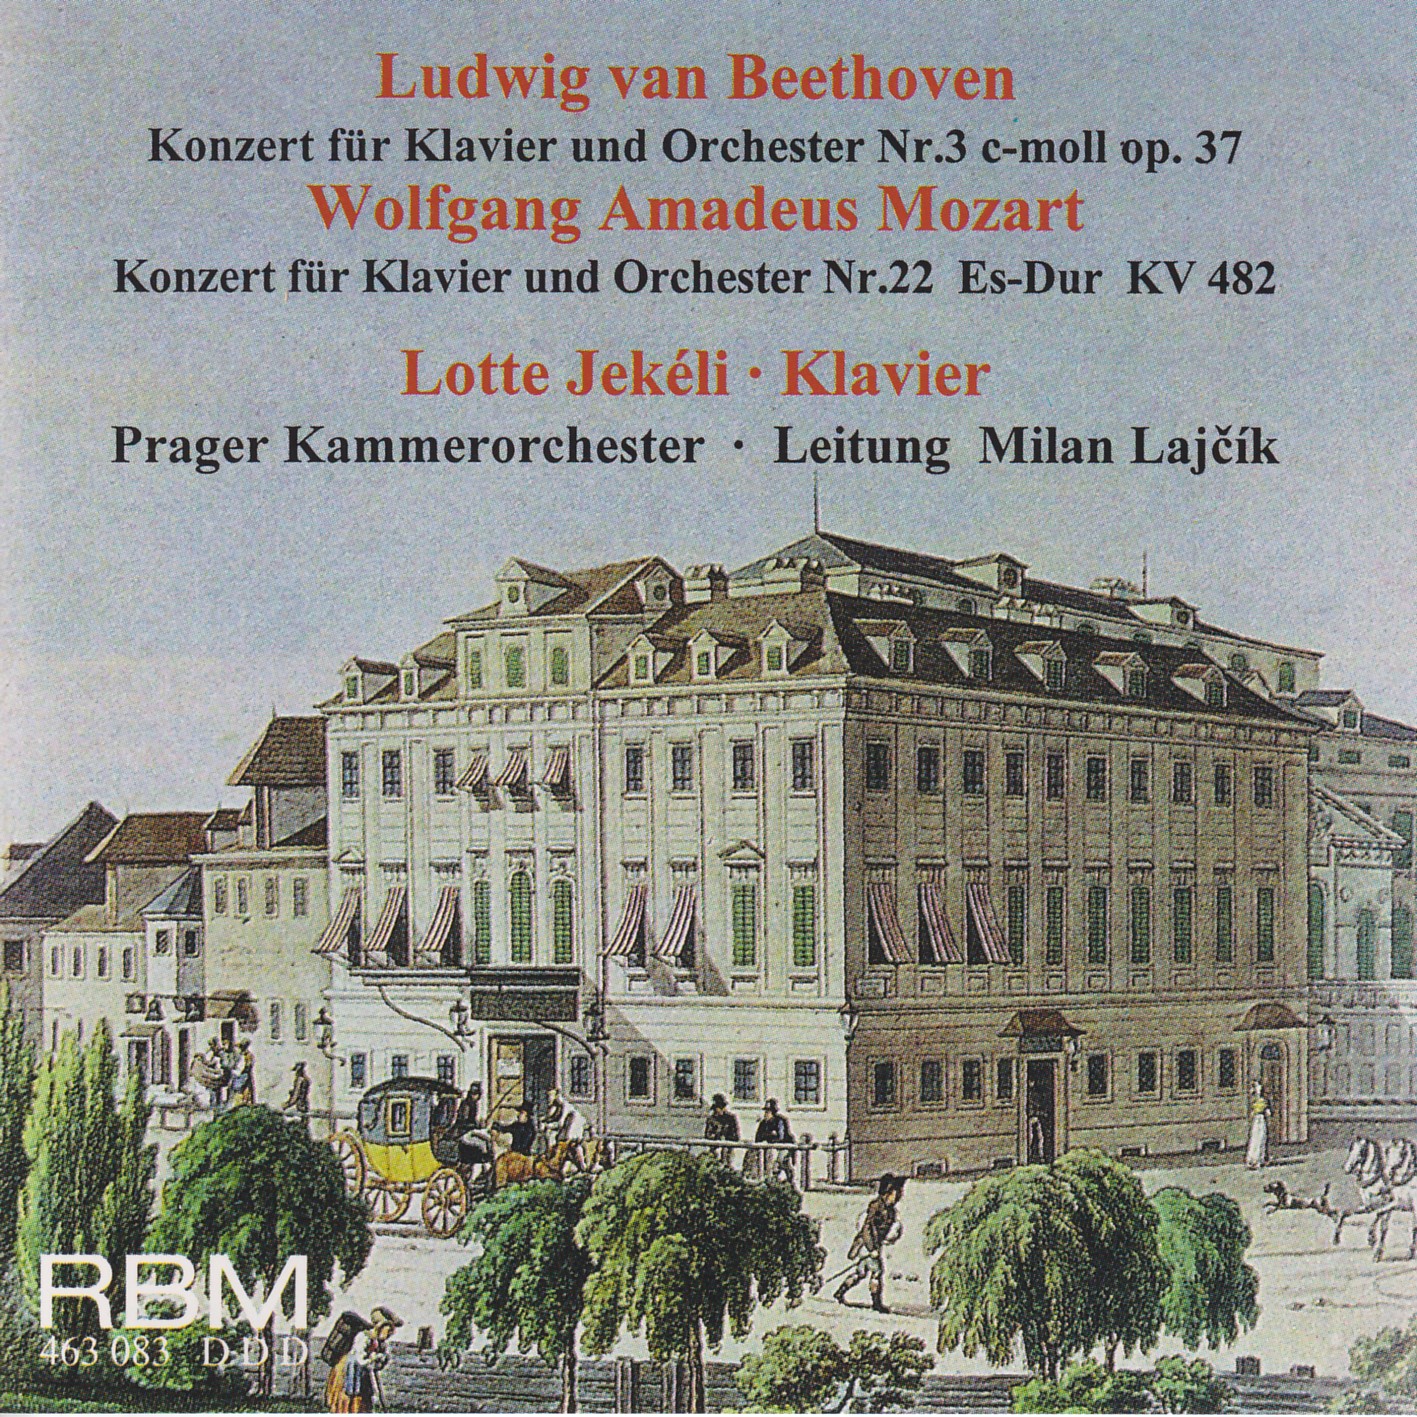 Ludwig van Beethoven & Wolfgang Amadeus Mozart - Konzerte für Klavier und Orchester